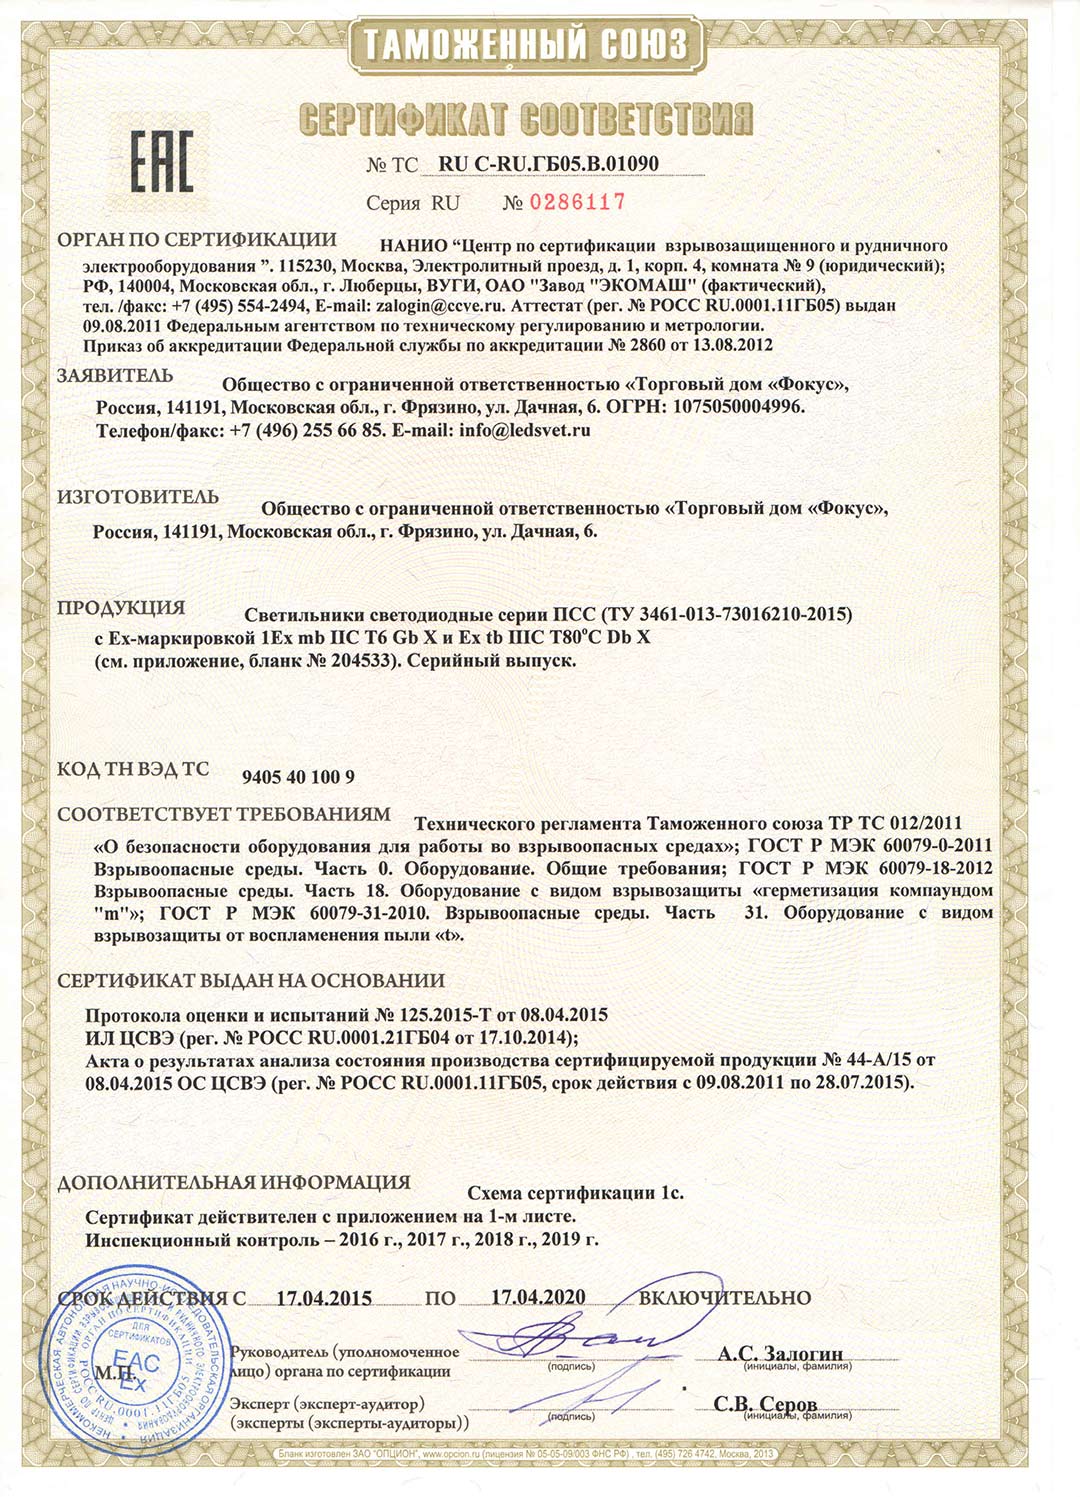 Сертификат соответствия оформленный на светильники